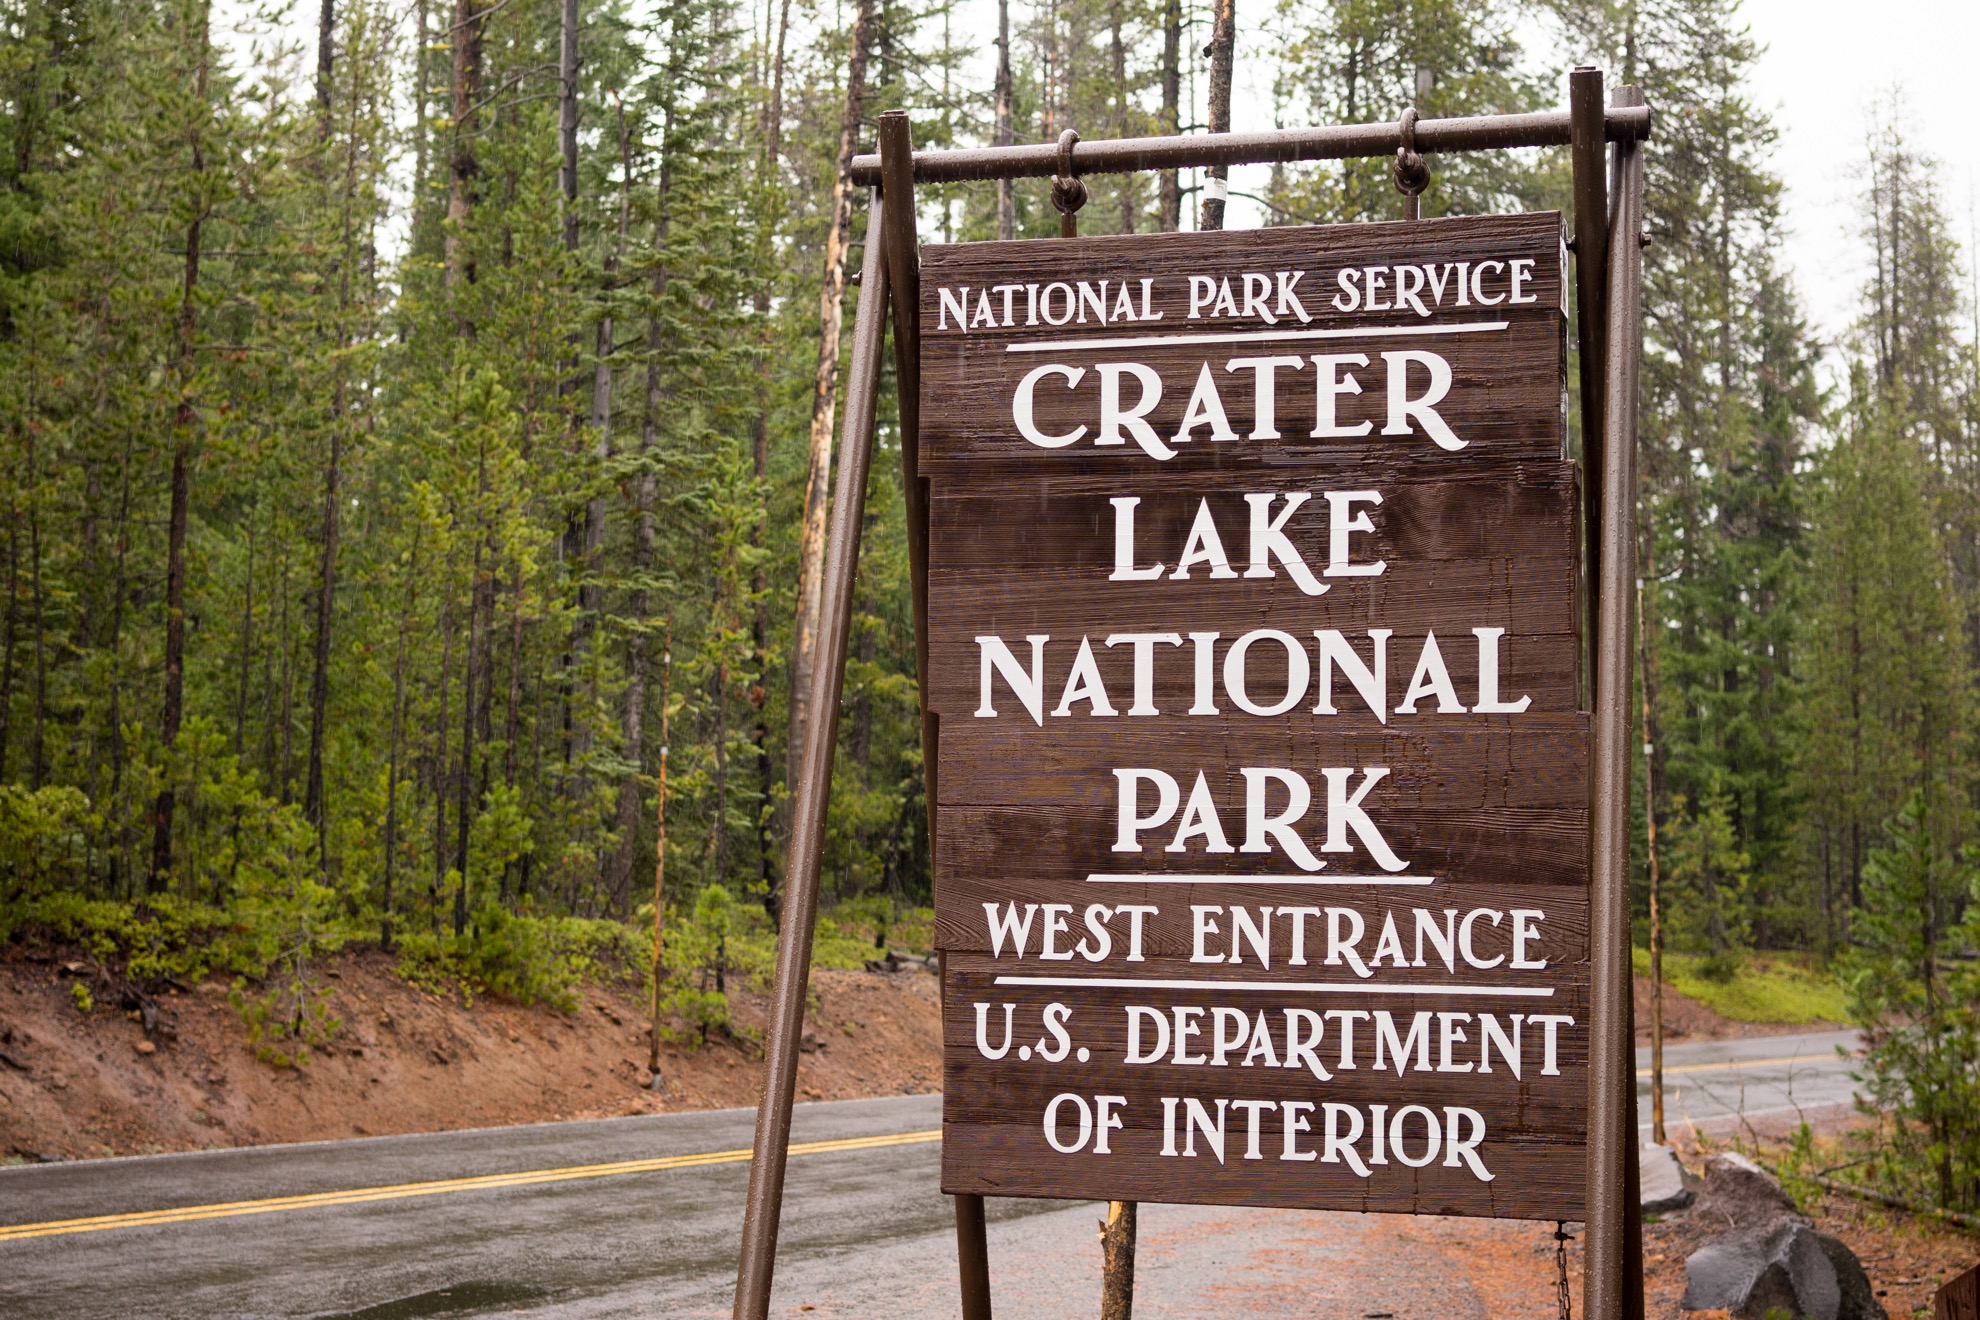 Cómo visitar el Parque Nacional Crater Lake en Oregon - 435